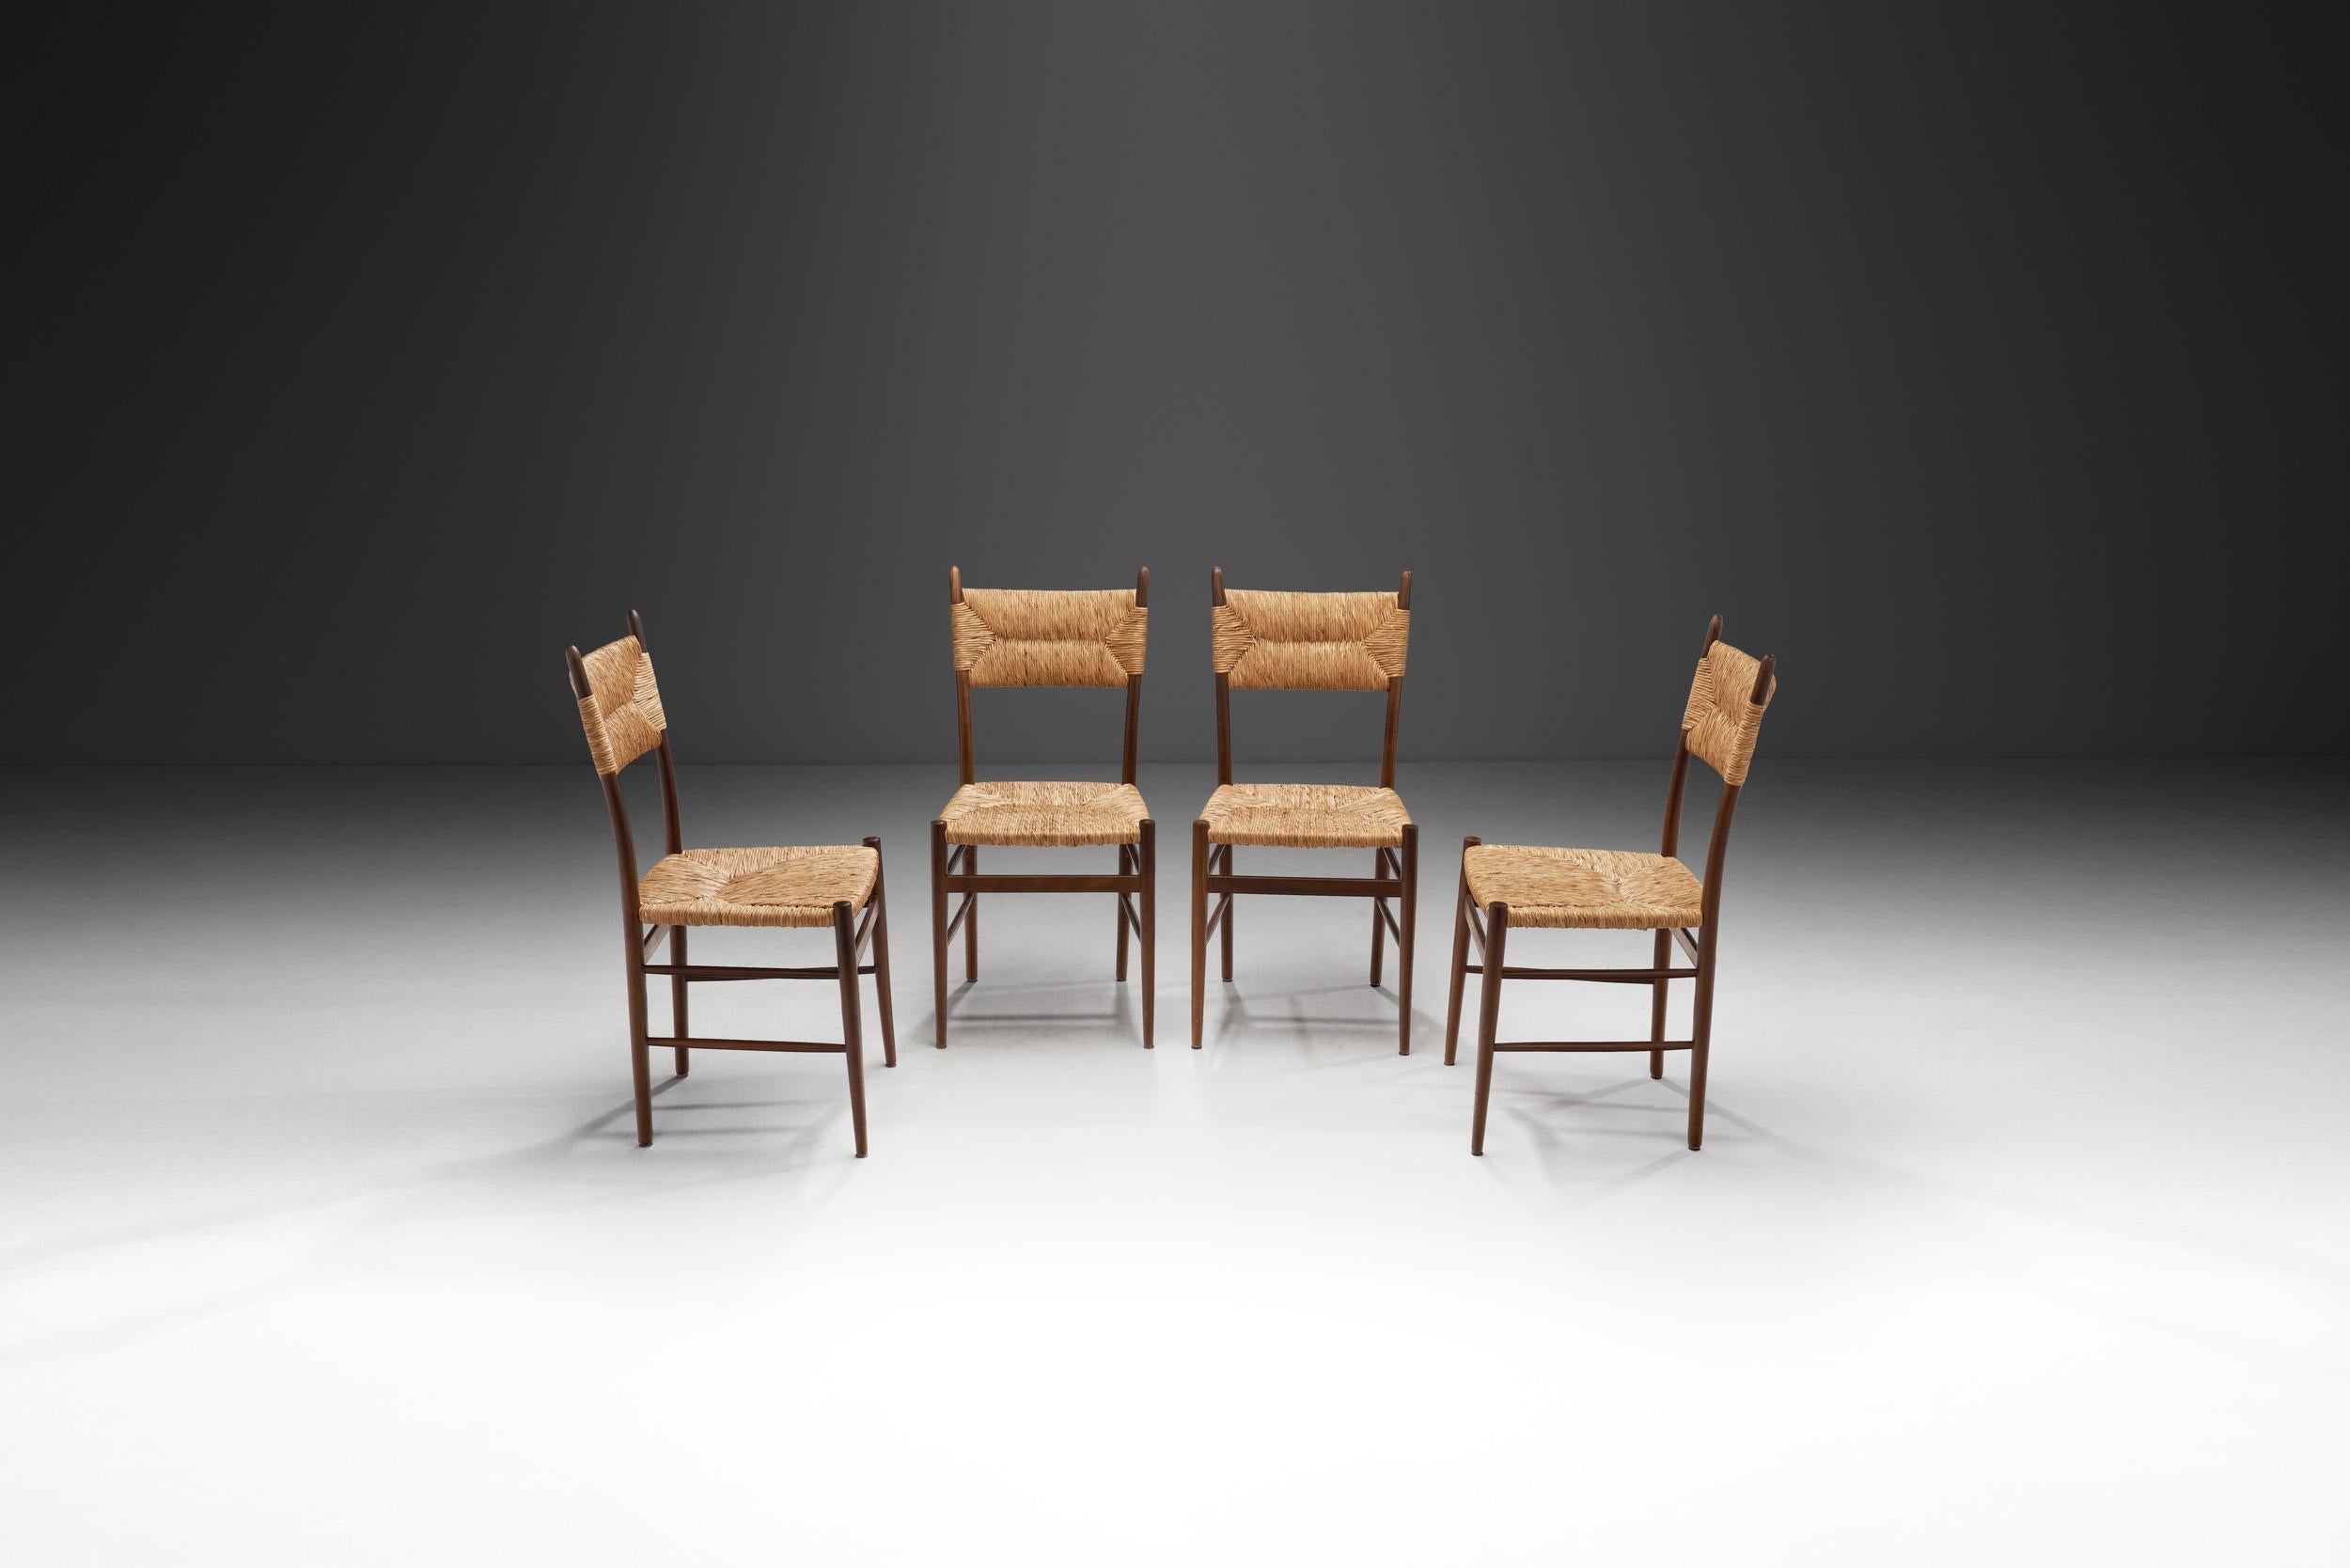 Diese vier Stühle, die an Charlotte Perriands ikonische Bauche No. 19 Stühle für BCB erinnern, sind ein Zeugnis für die exquisite Verbindung von Modernismus und Natur. Diese mit einem scharfen Auge für Harmonie gefertigten Stühle verkörpern den